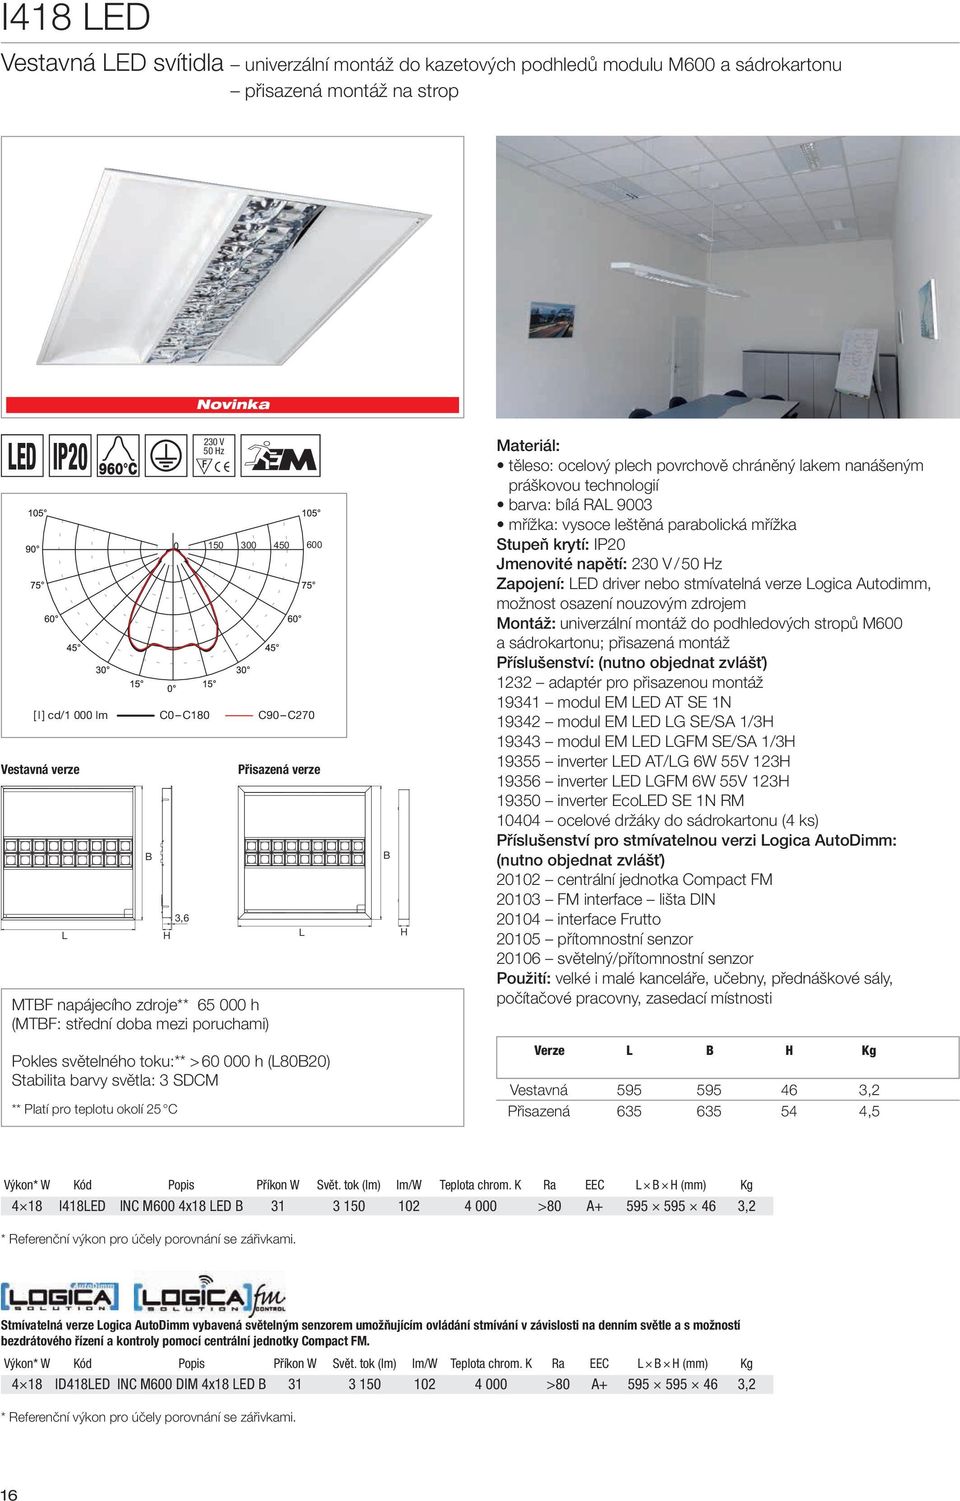 práškovou technologií barva: bílá RAL 9003 mřížka: vysoce leštěná parabolická mřížka Stupeň krytí: IP20 Jmenovité napětí: 230 V /50 Hz Zapojení: LED driver nebo stmívatelná verze Logica Autodimm,